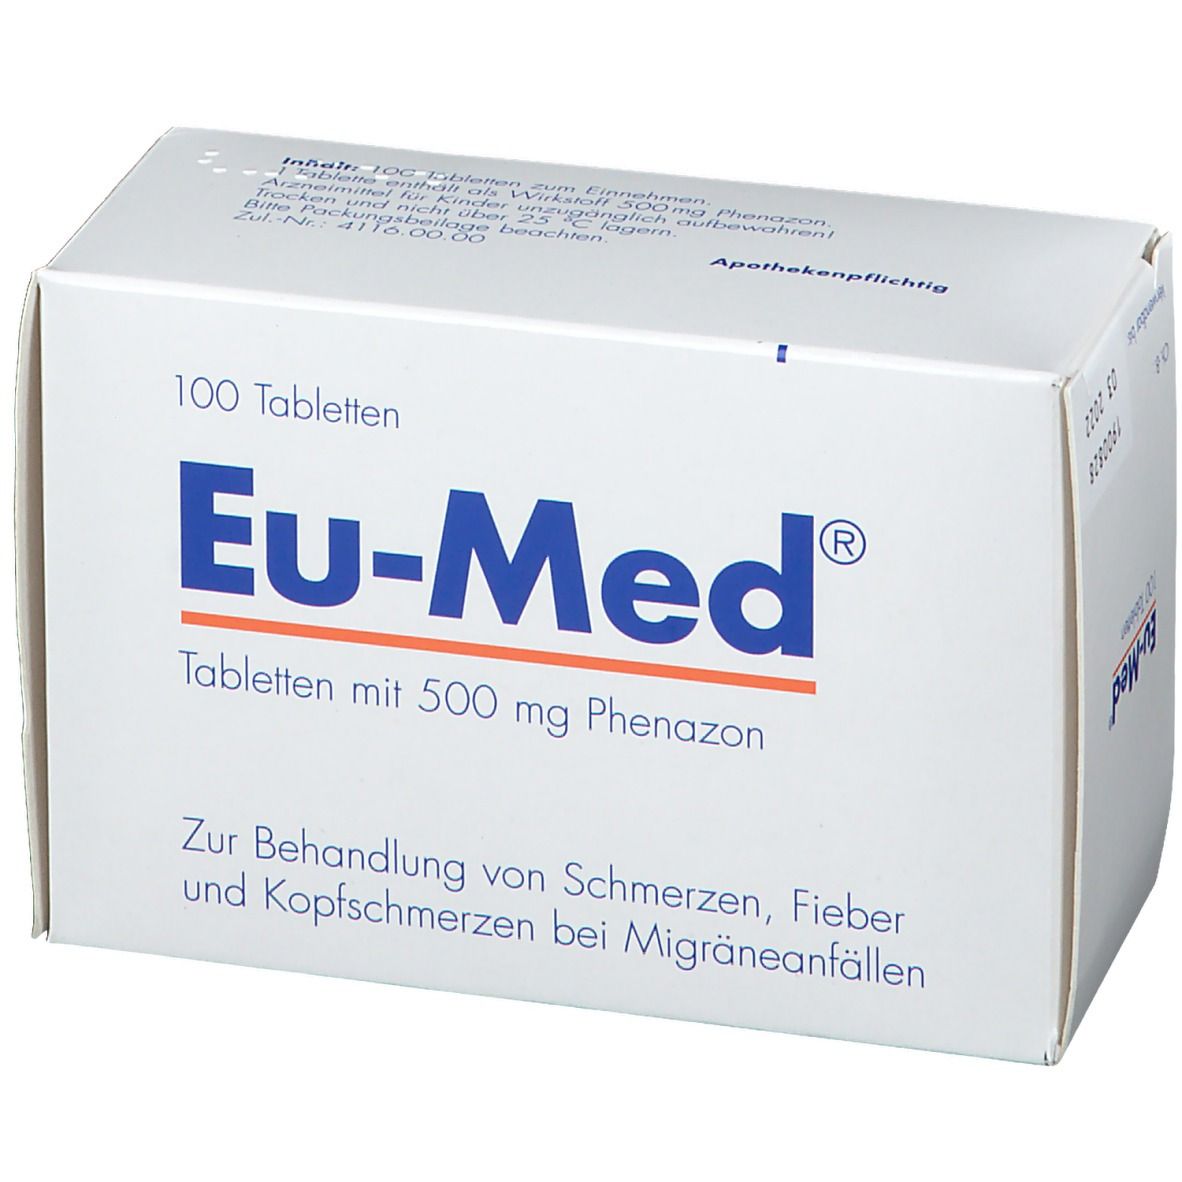 Eu-Med®